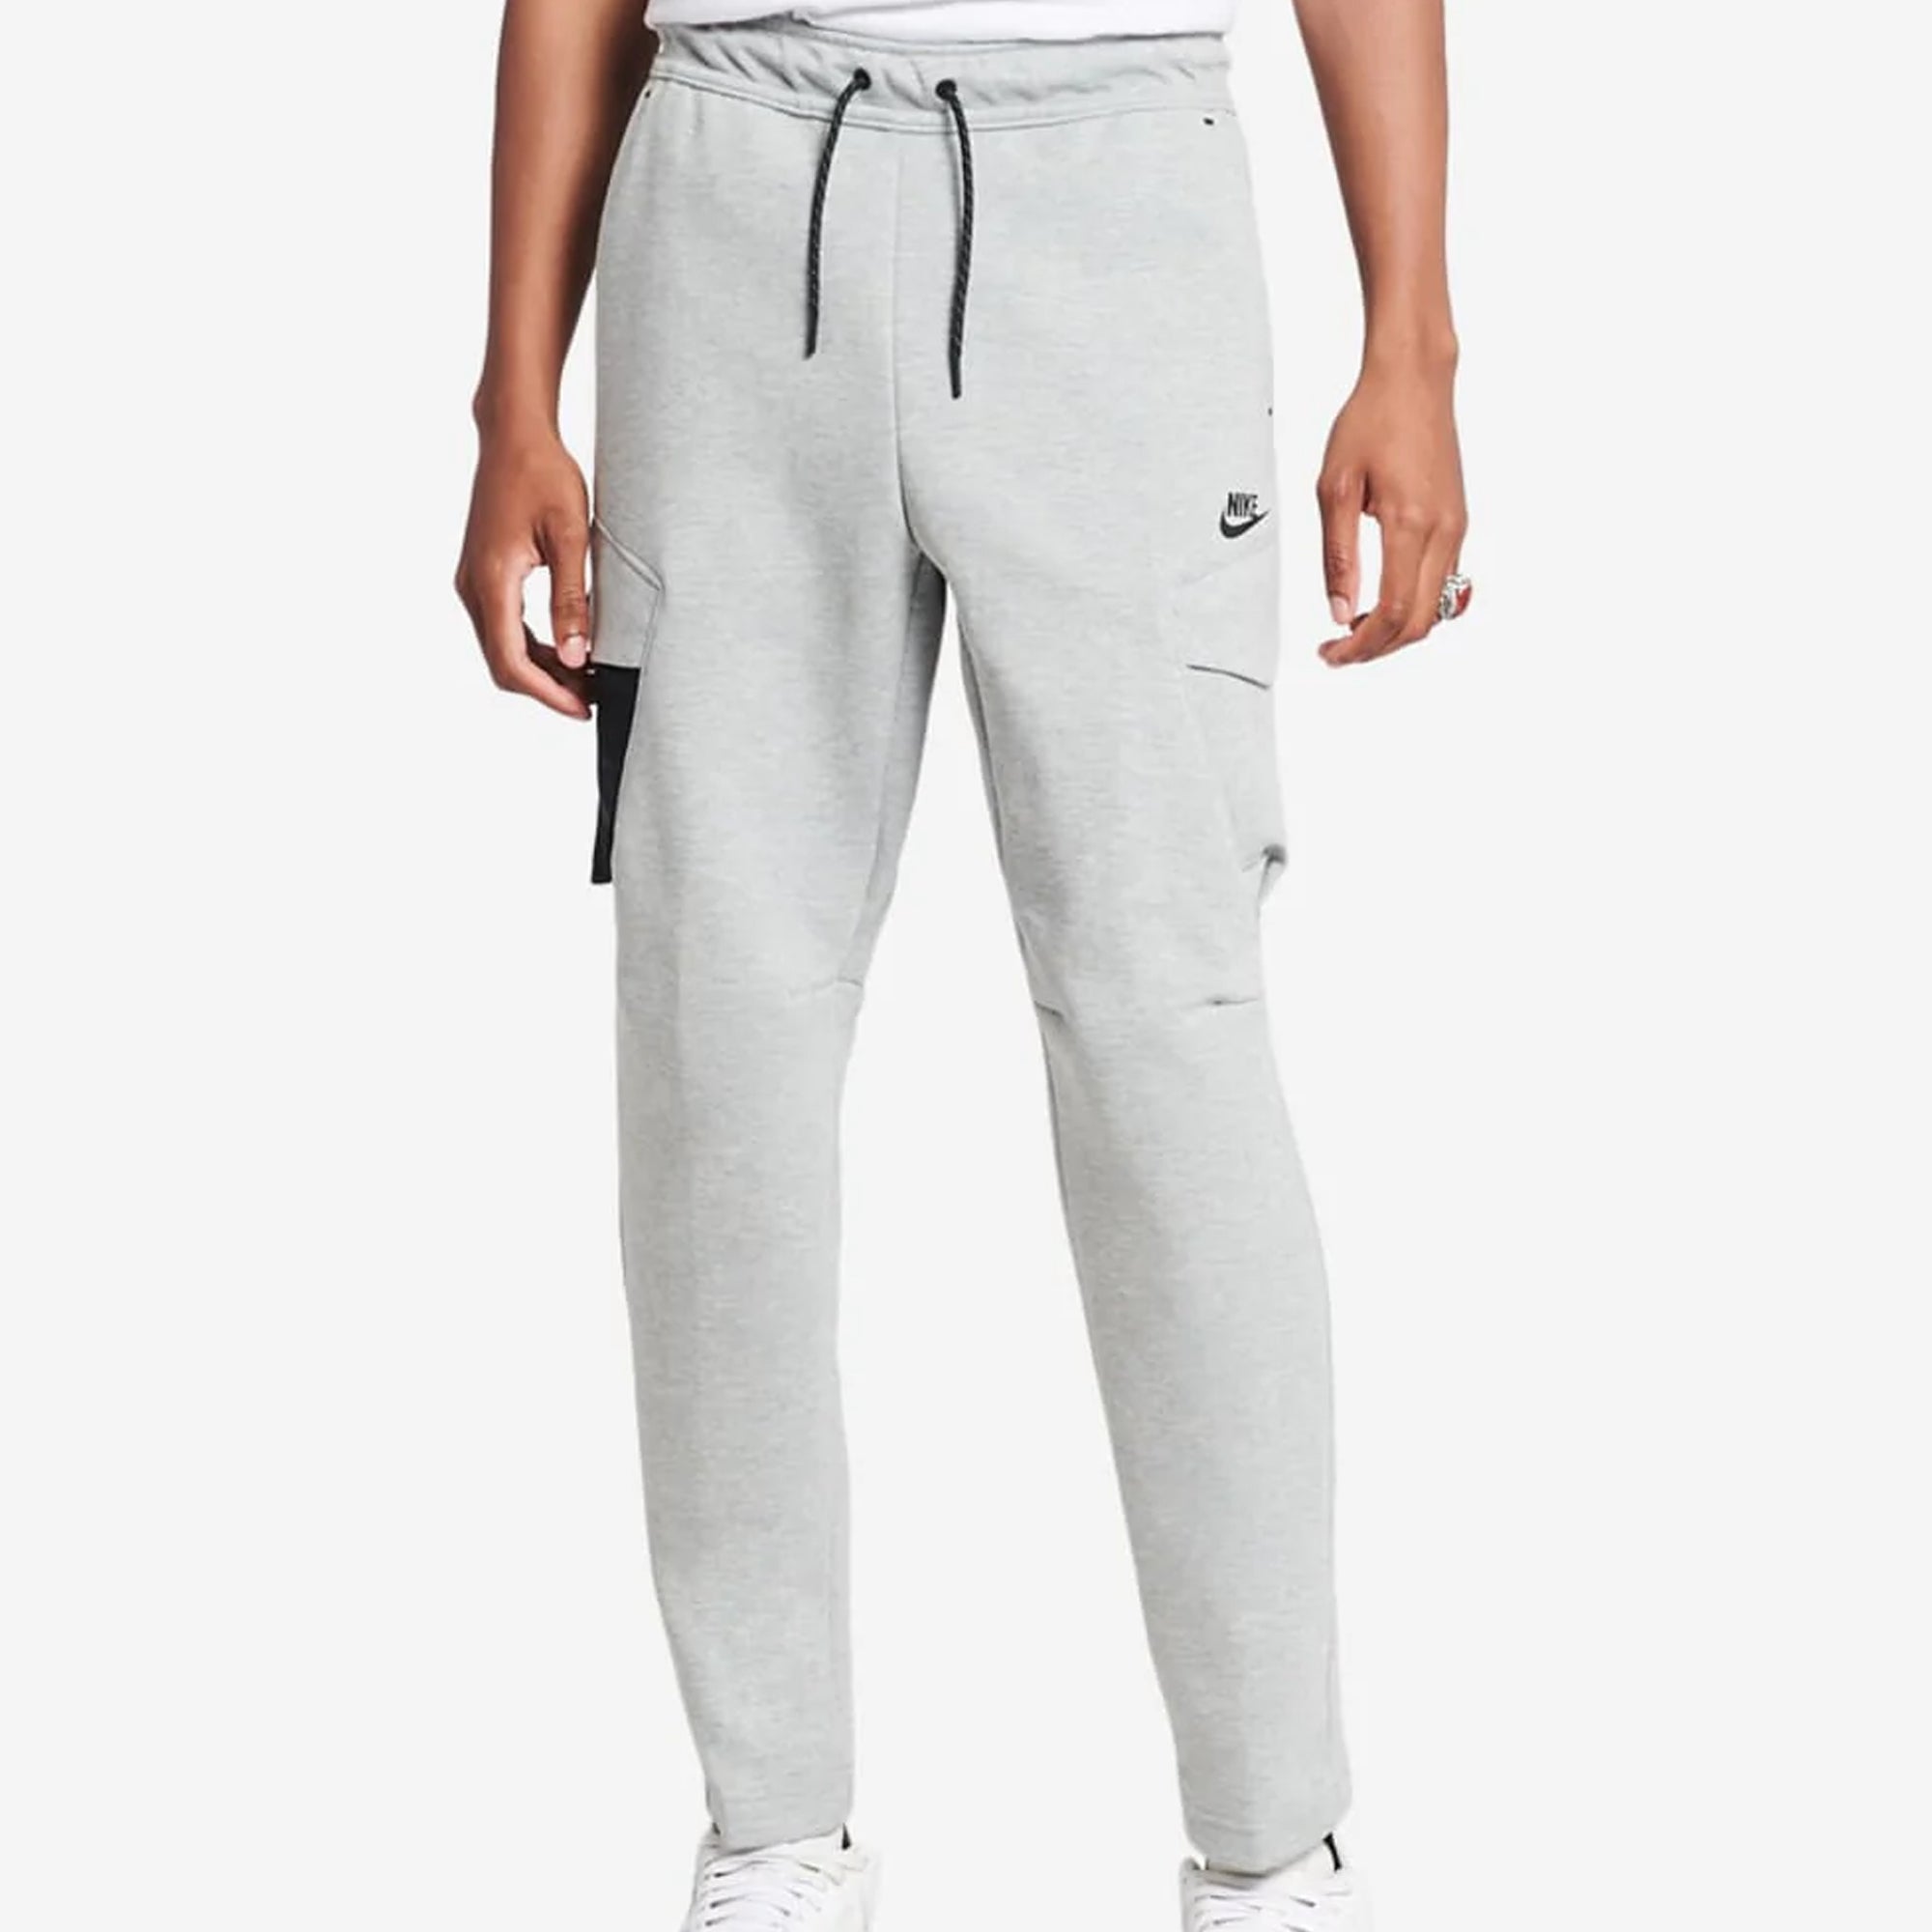 [DM6453-063] Mens Nike Sportswear Tech Fleece Utility Trousers ...